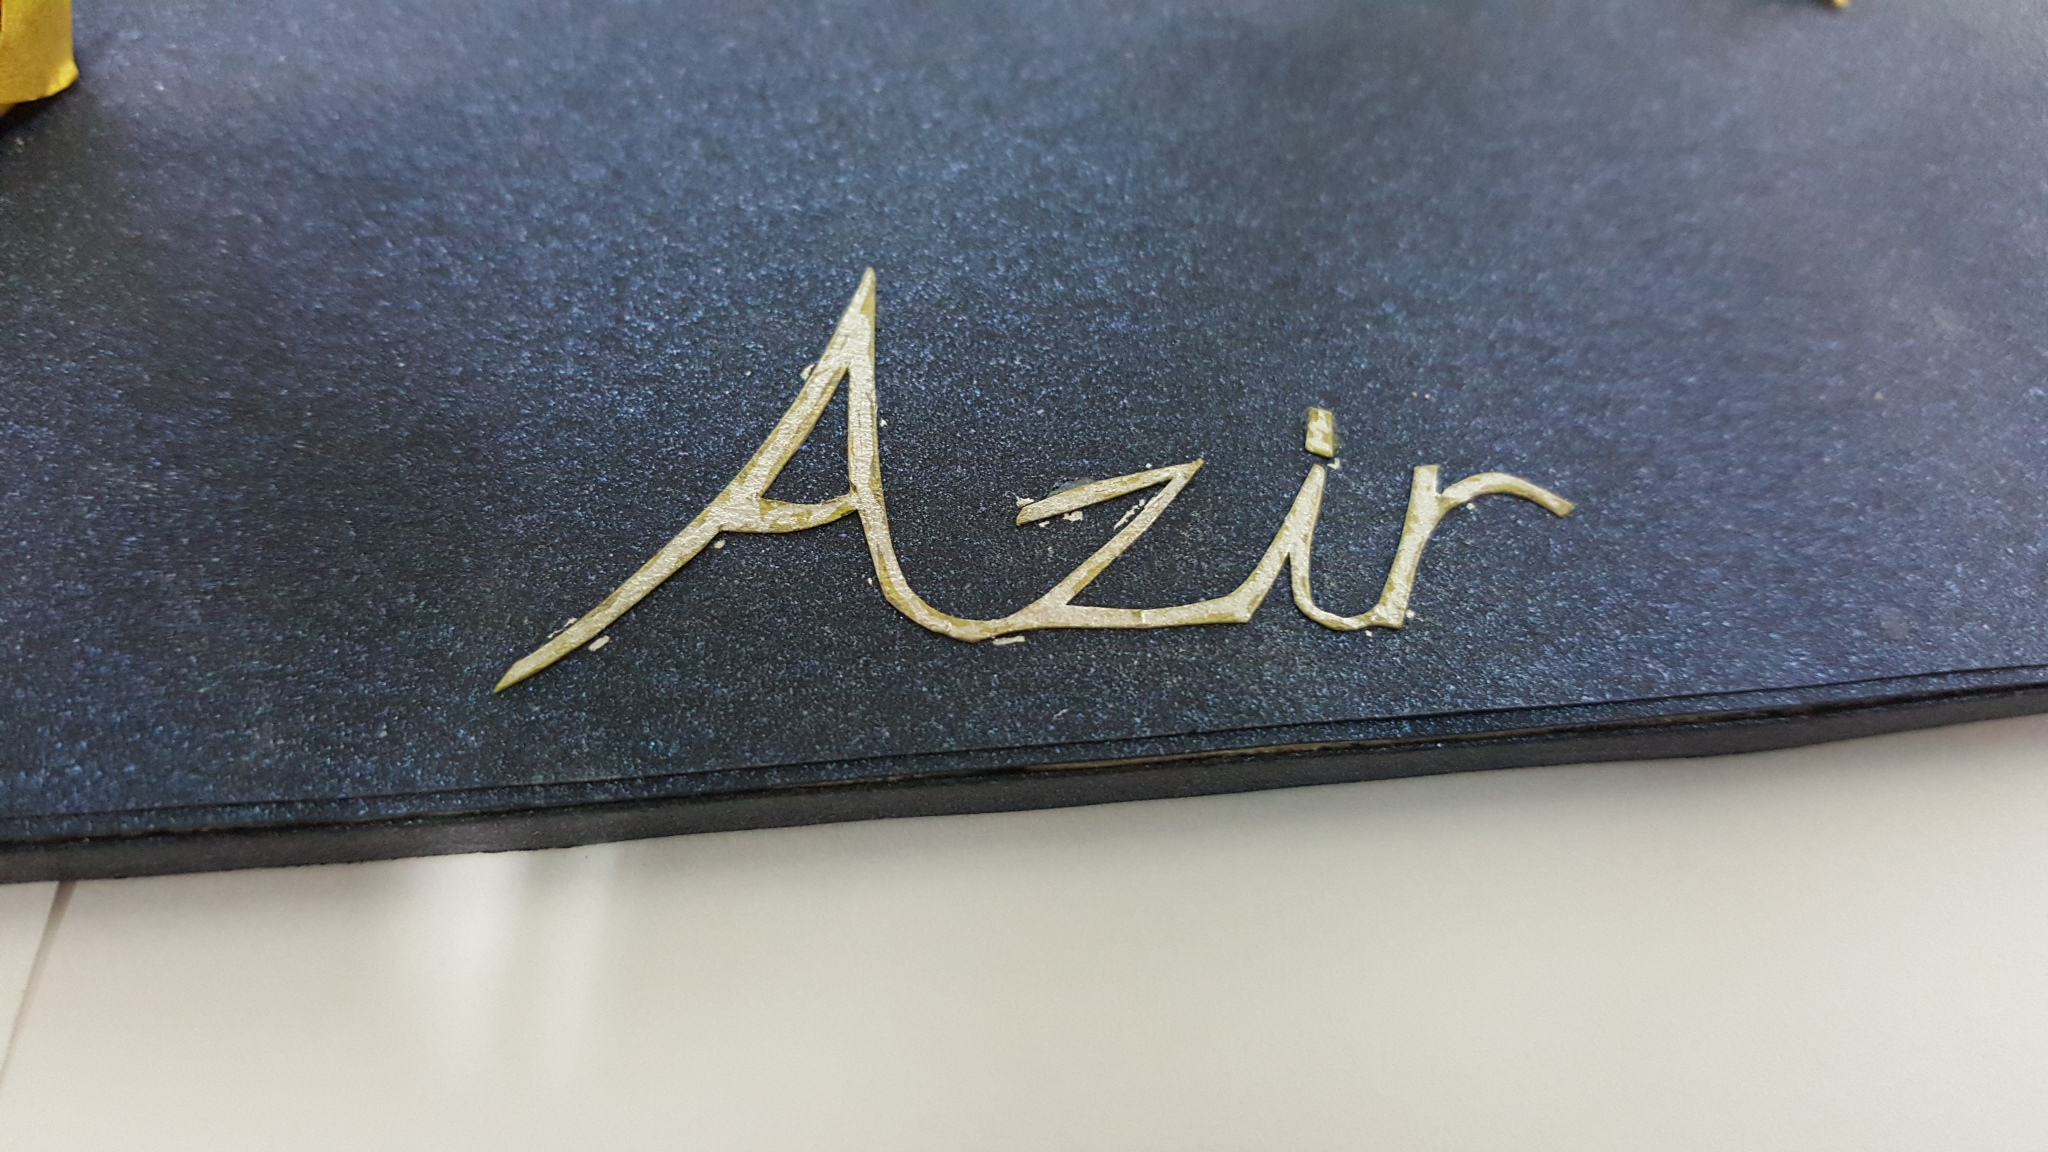 LMHT: Xuýt xoa trước mô hình Azir cực chất bằng giấy